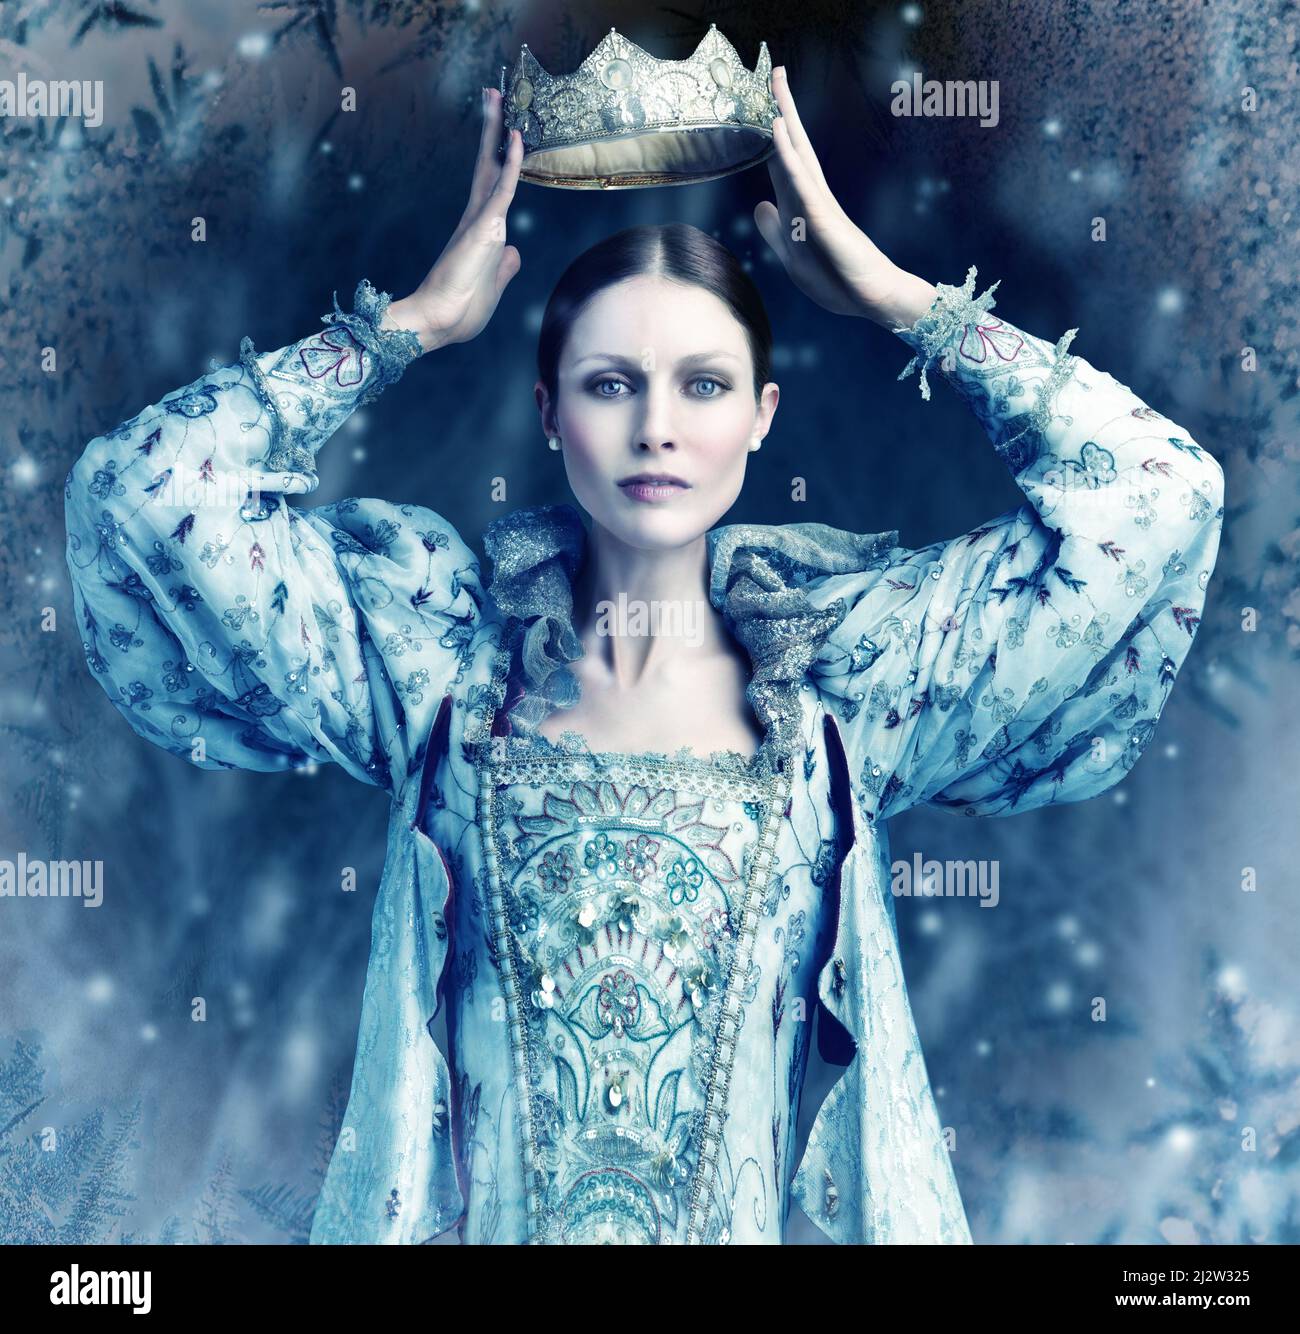 La reina del hielo viene. Tiro de reina sosteniendo una corona sobre su cabeza con nieve cayendo alrededor de ella. Foto de stock